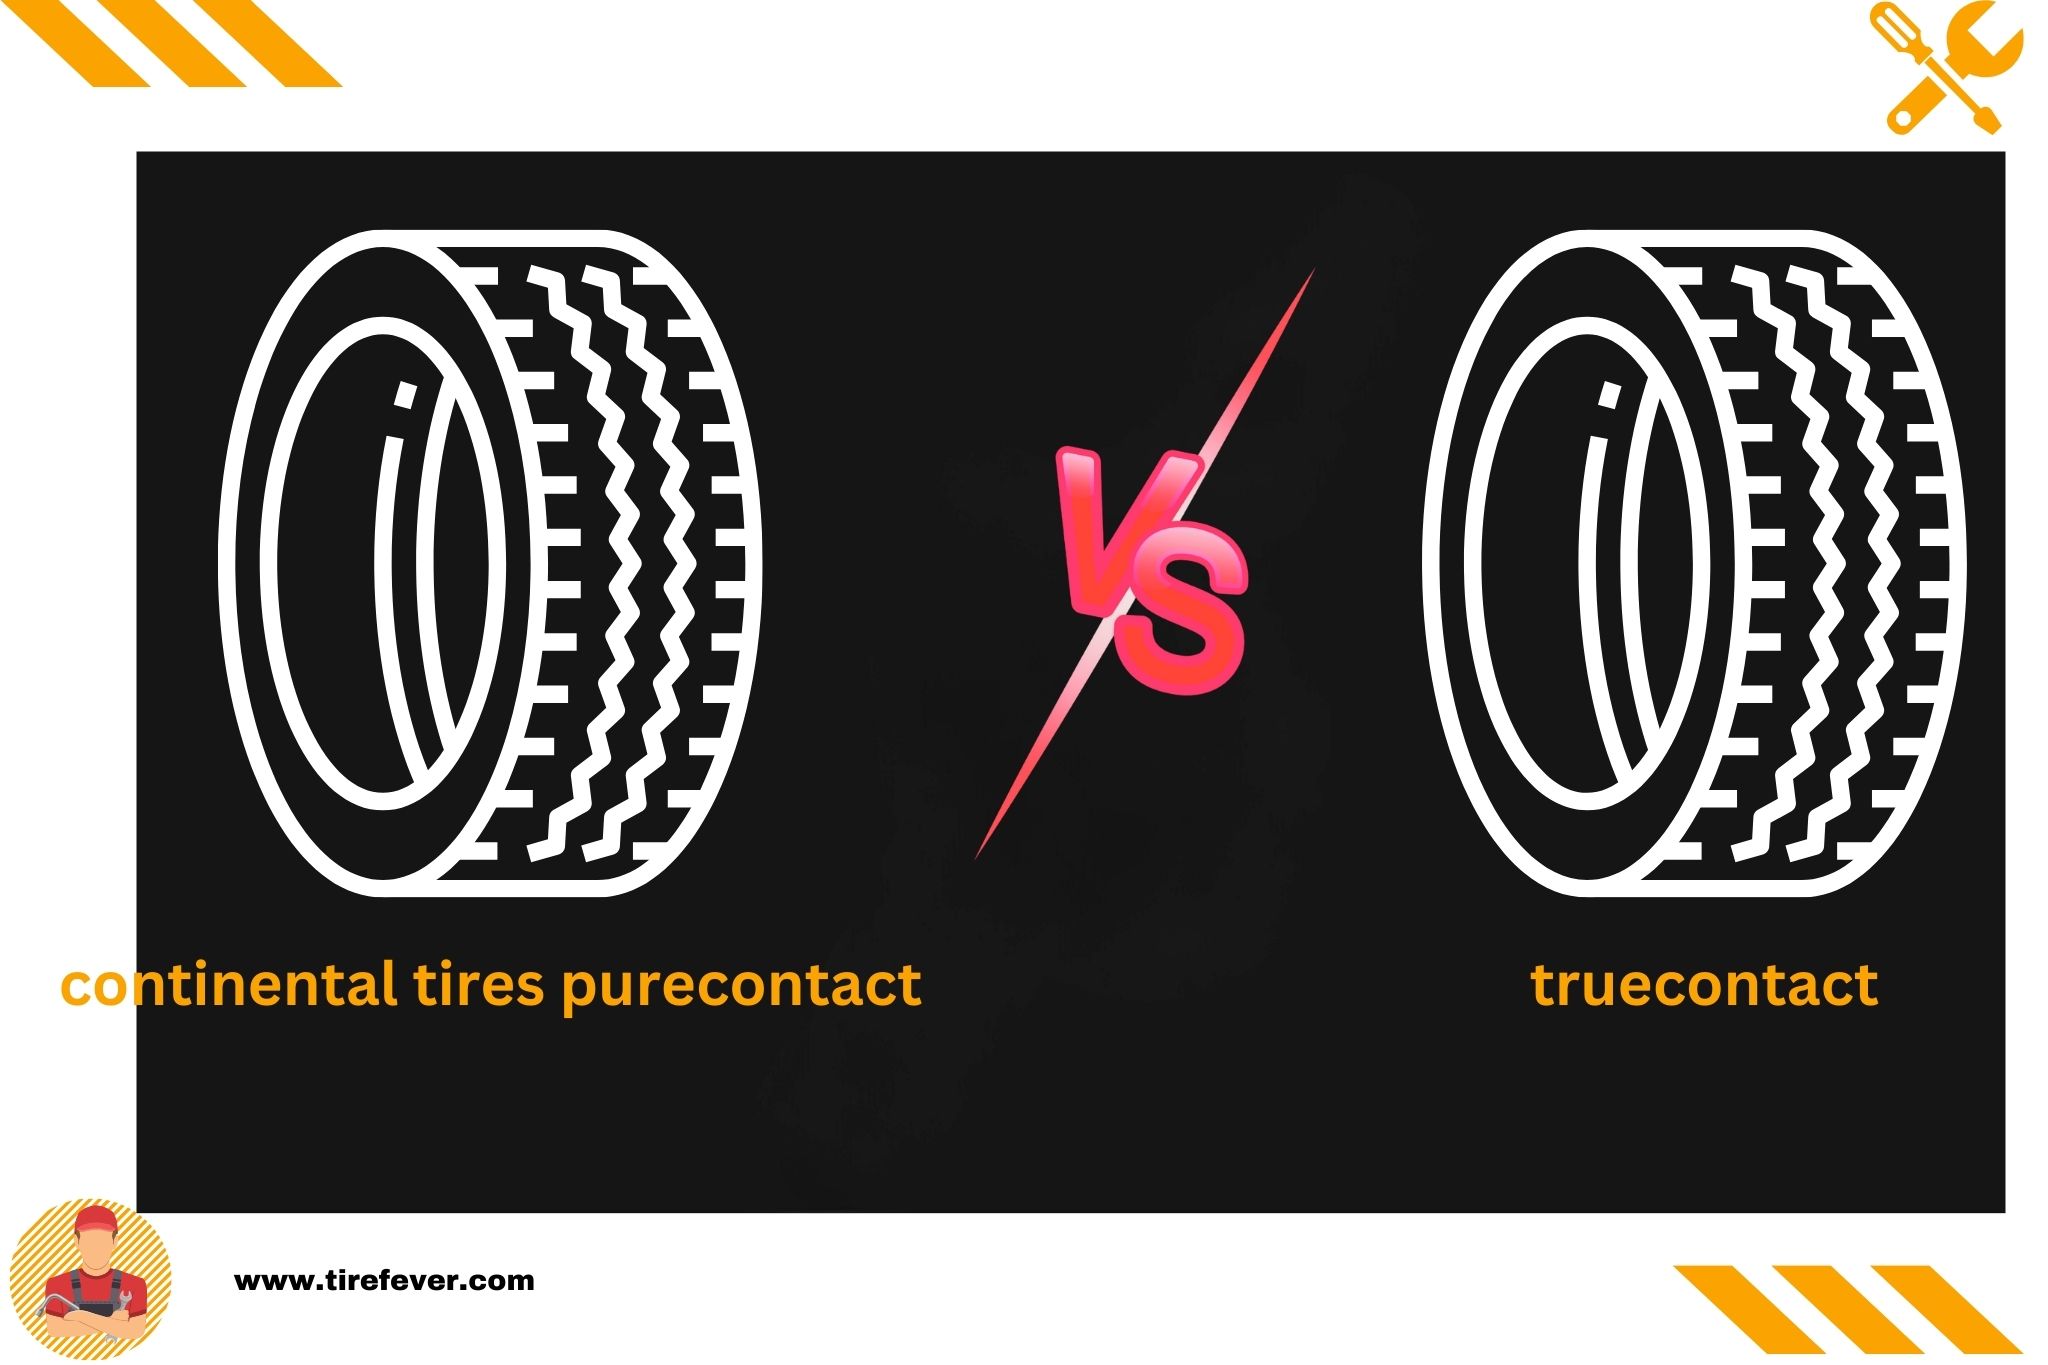 continental tires purecontact vs truecontact